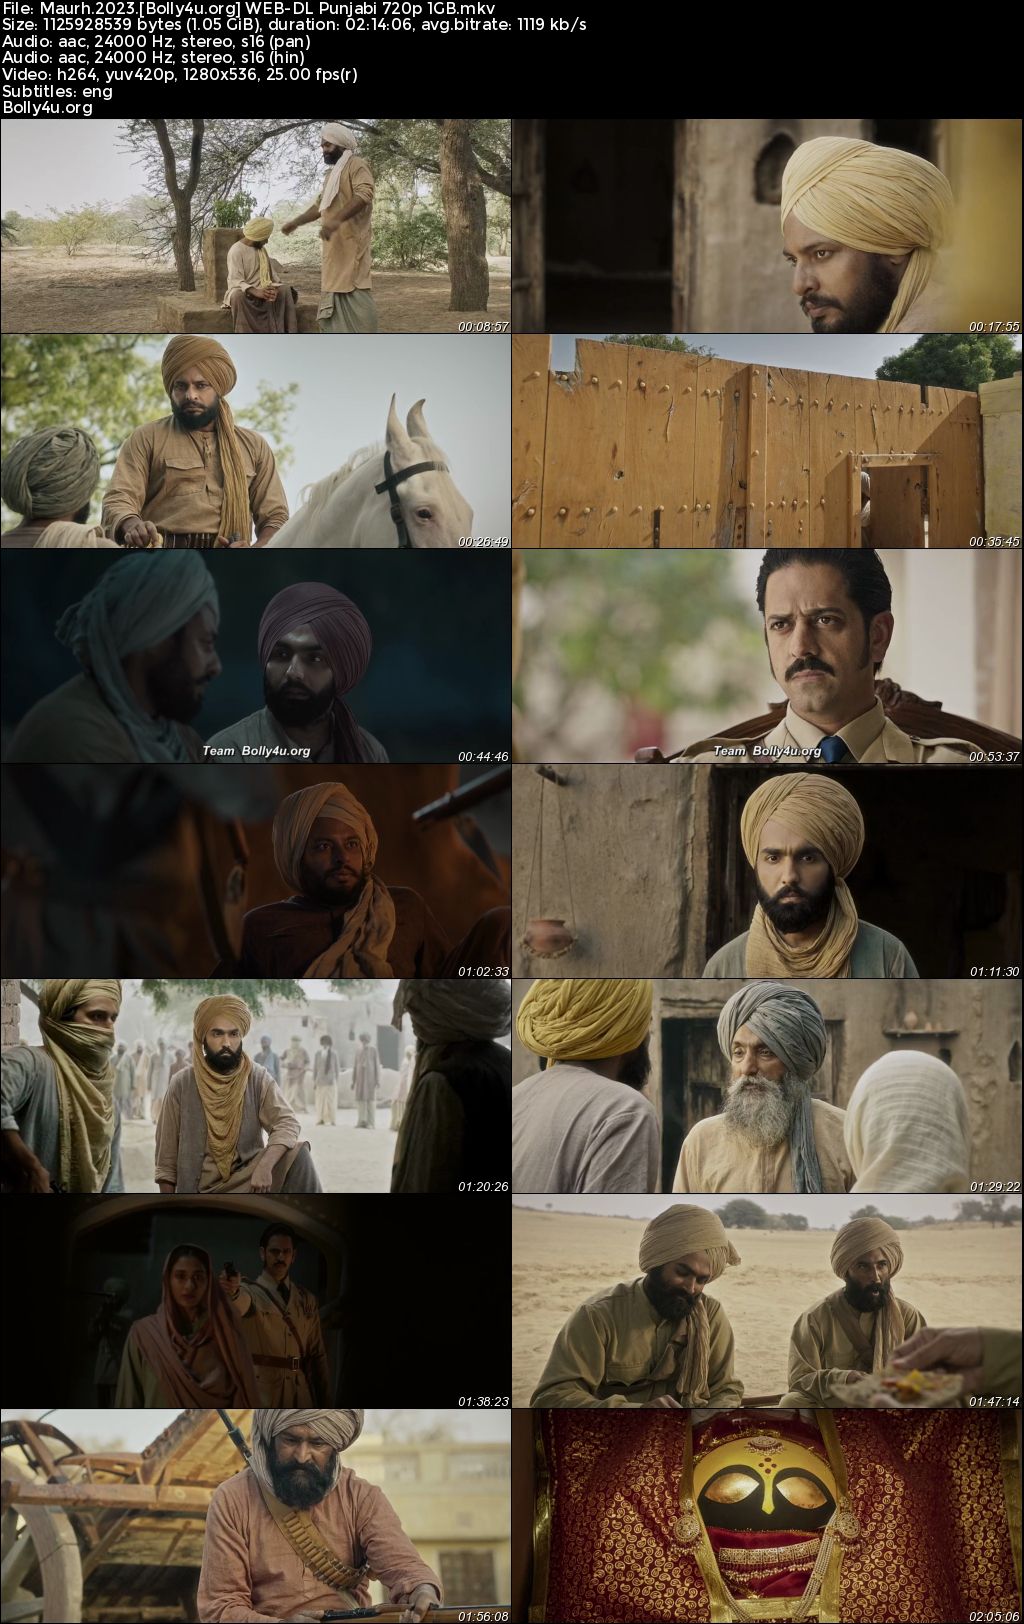 Maurh 2023 WEB-DL Punjabi Full Movie Download 1080p 720p 480p